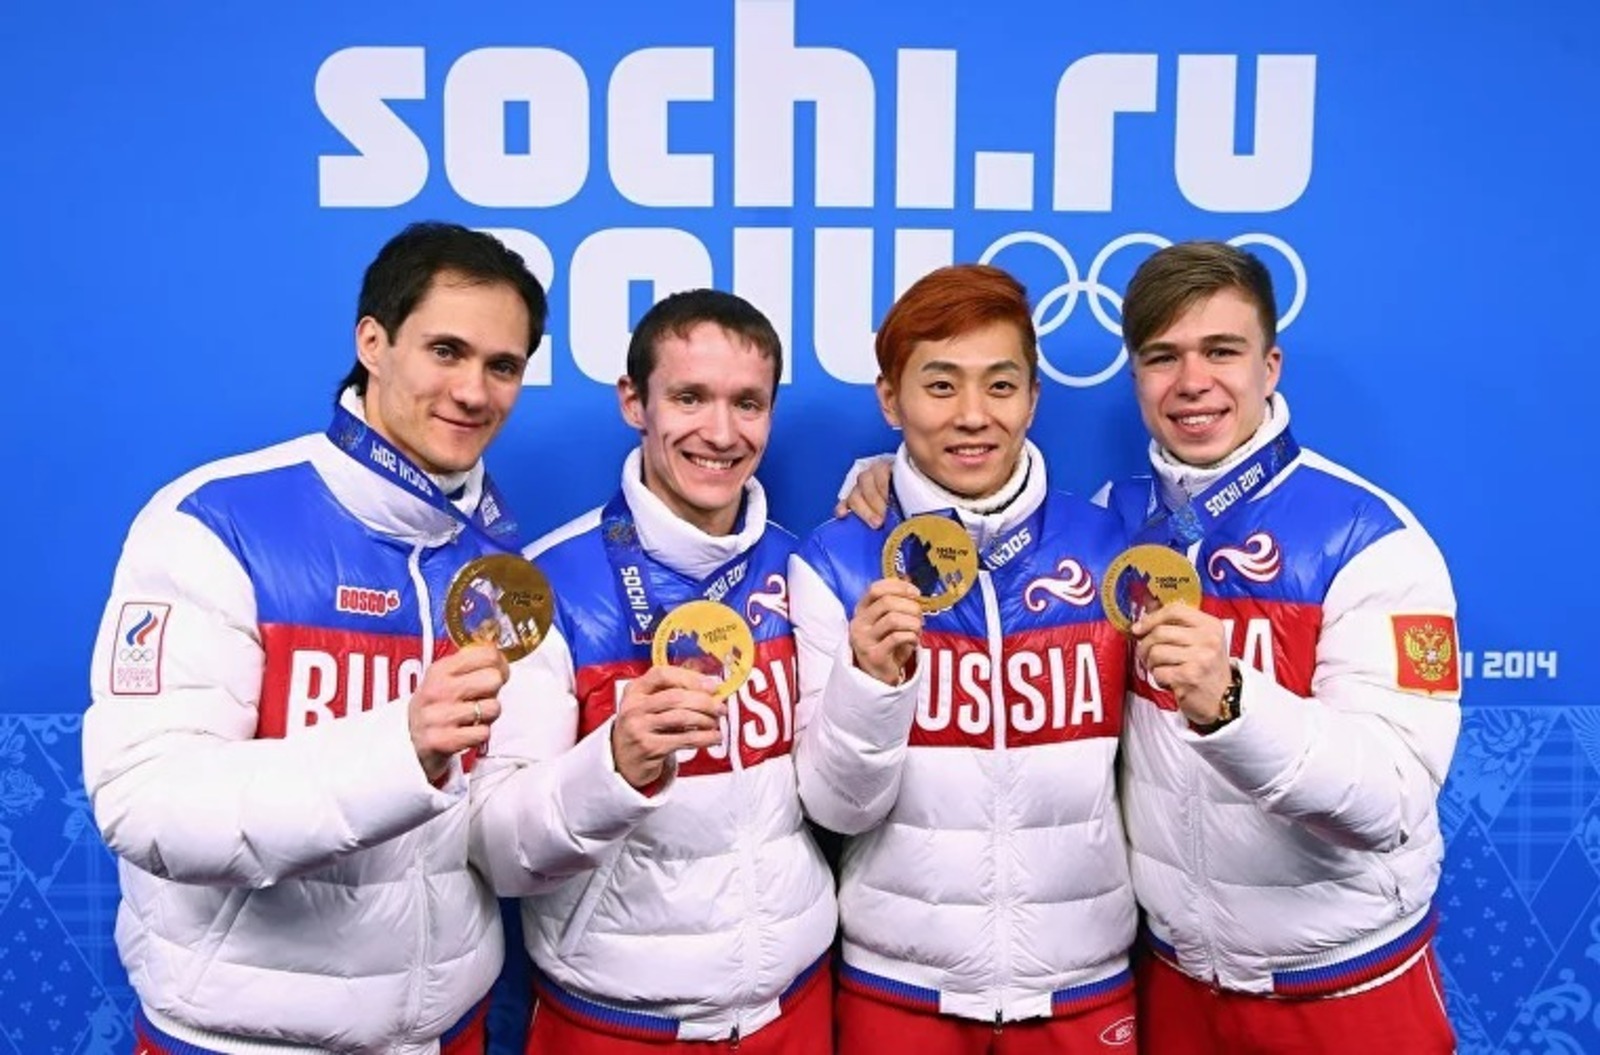 Спортсмены Башкирии 10 лет назад на Олимпийских играх в Сочи завоевали награды